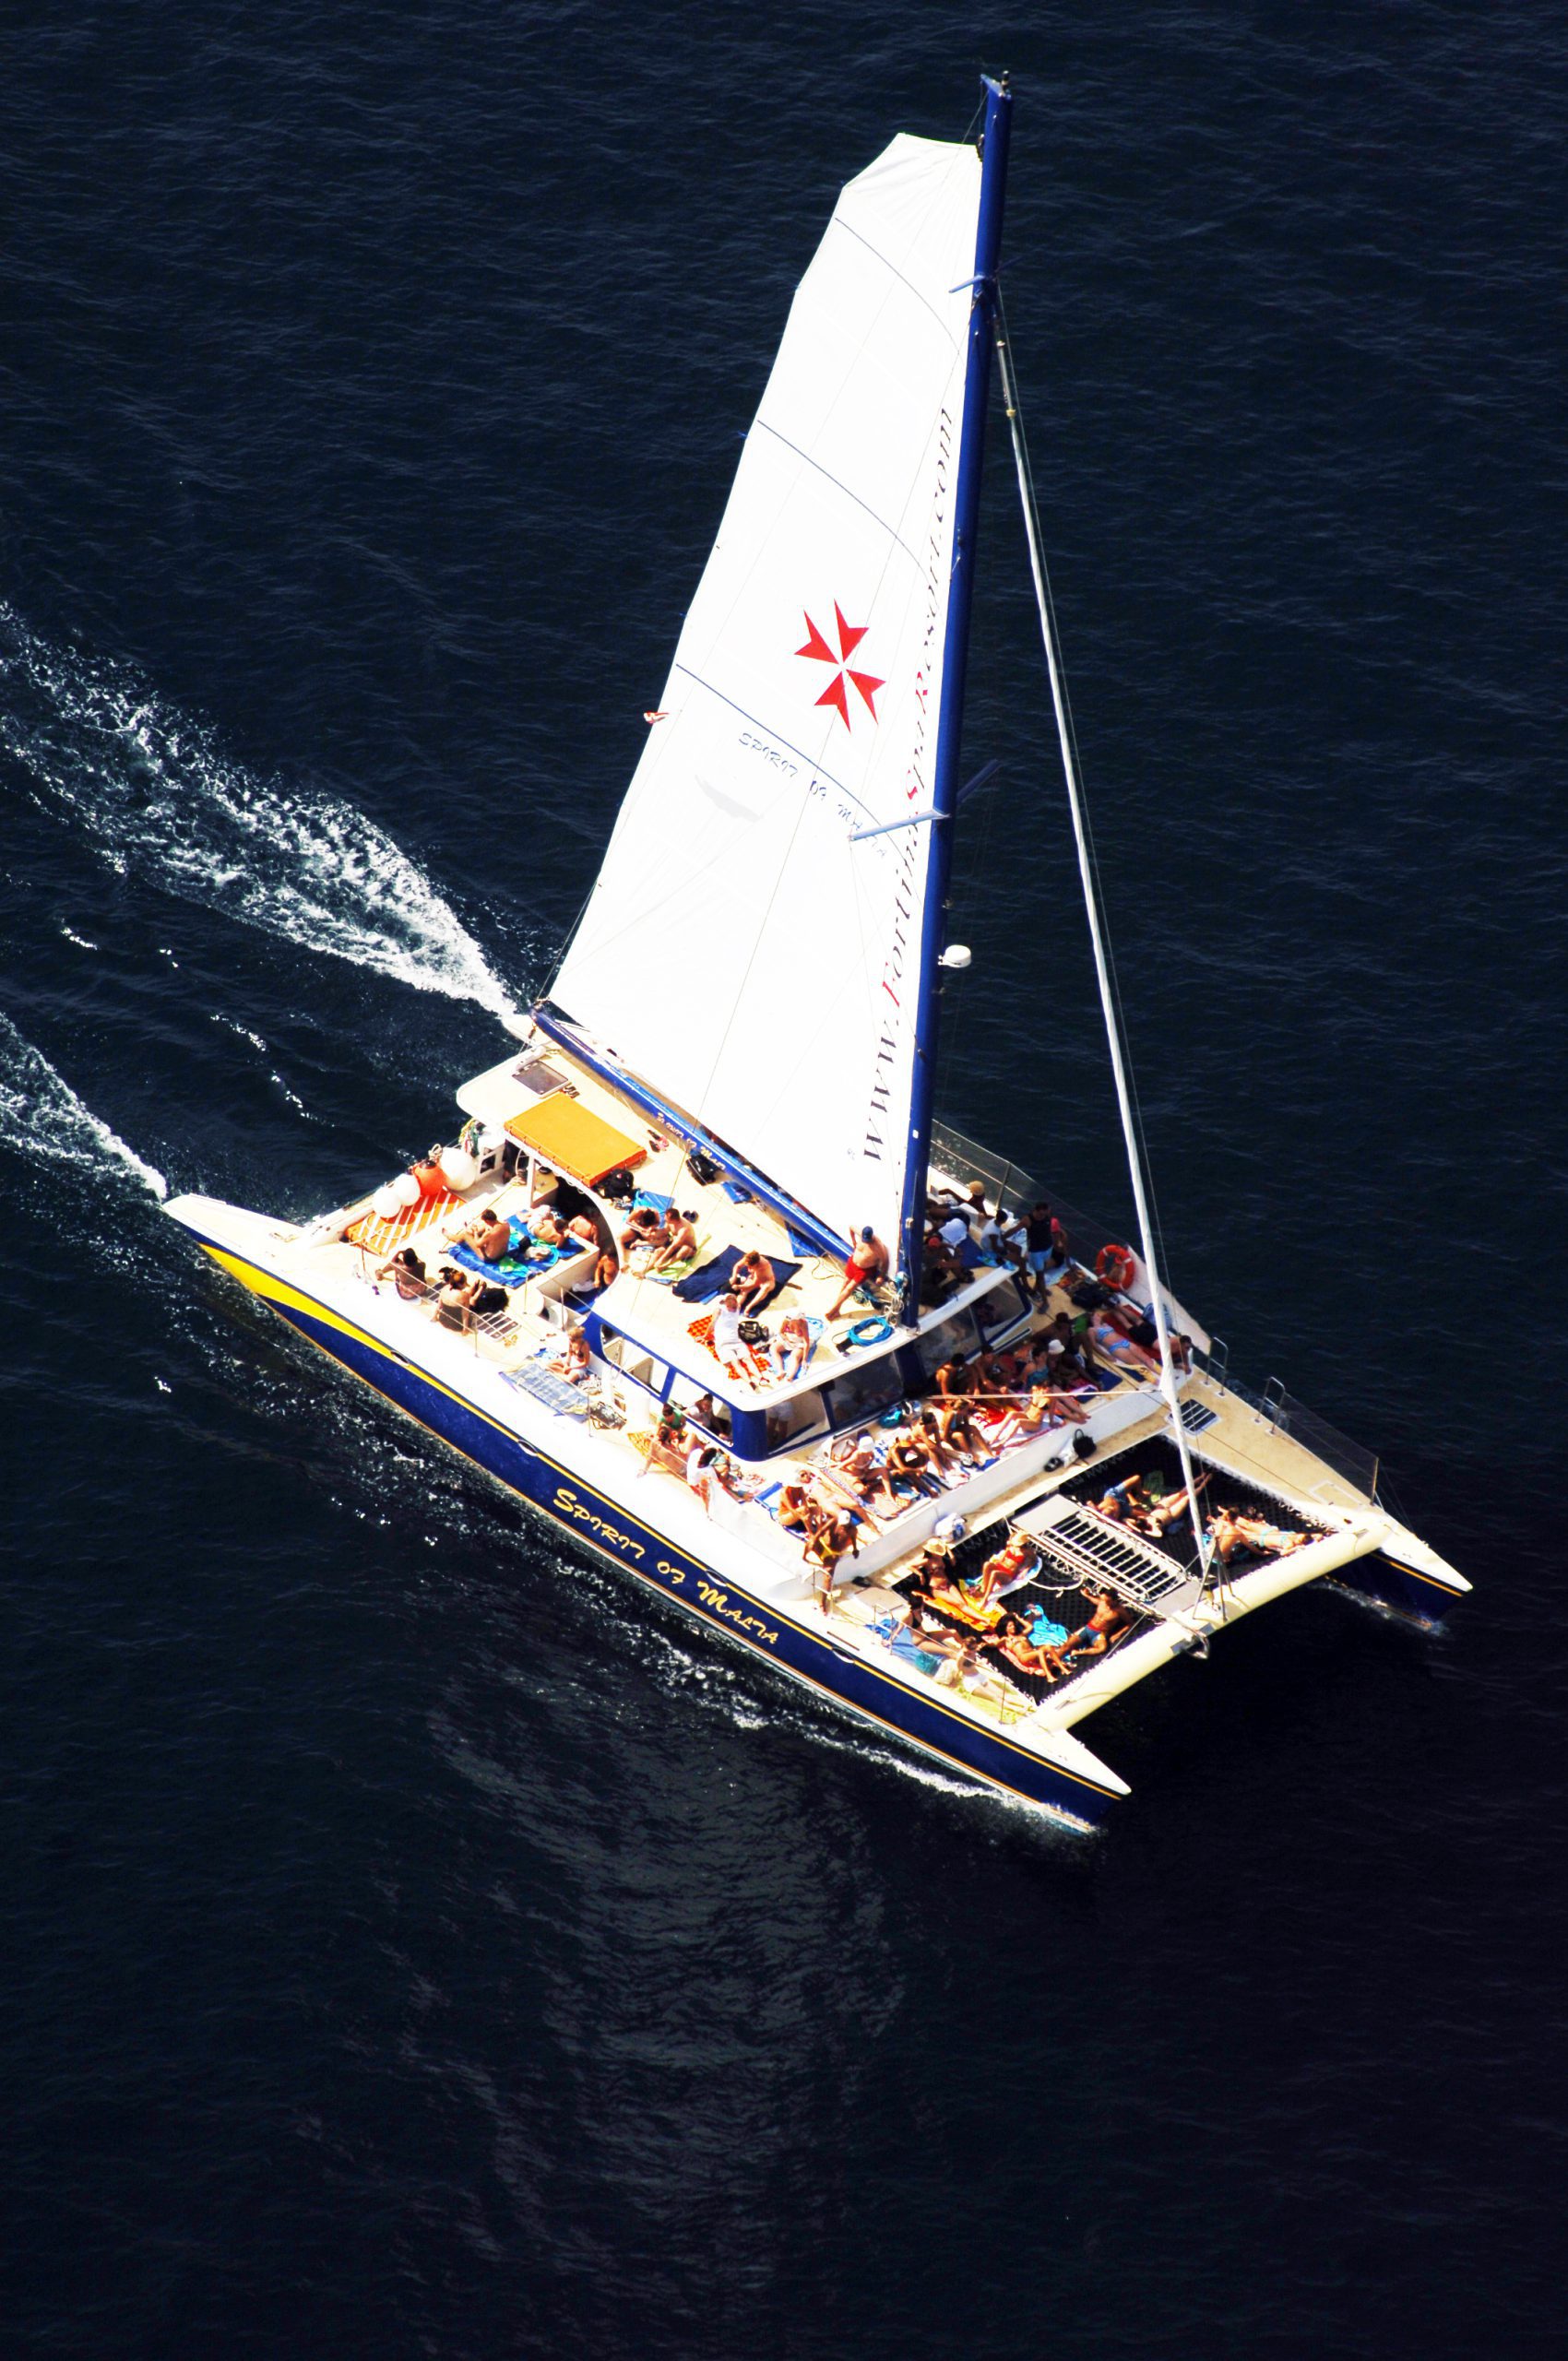 Malta catamaran excursion